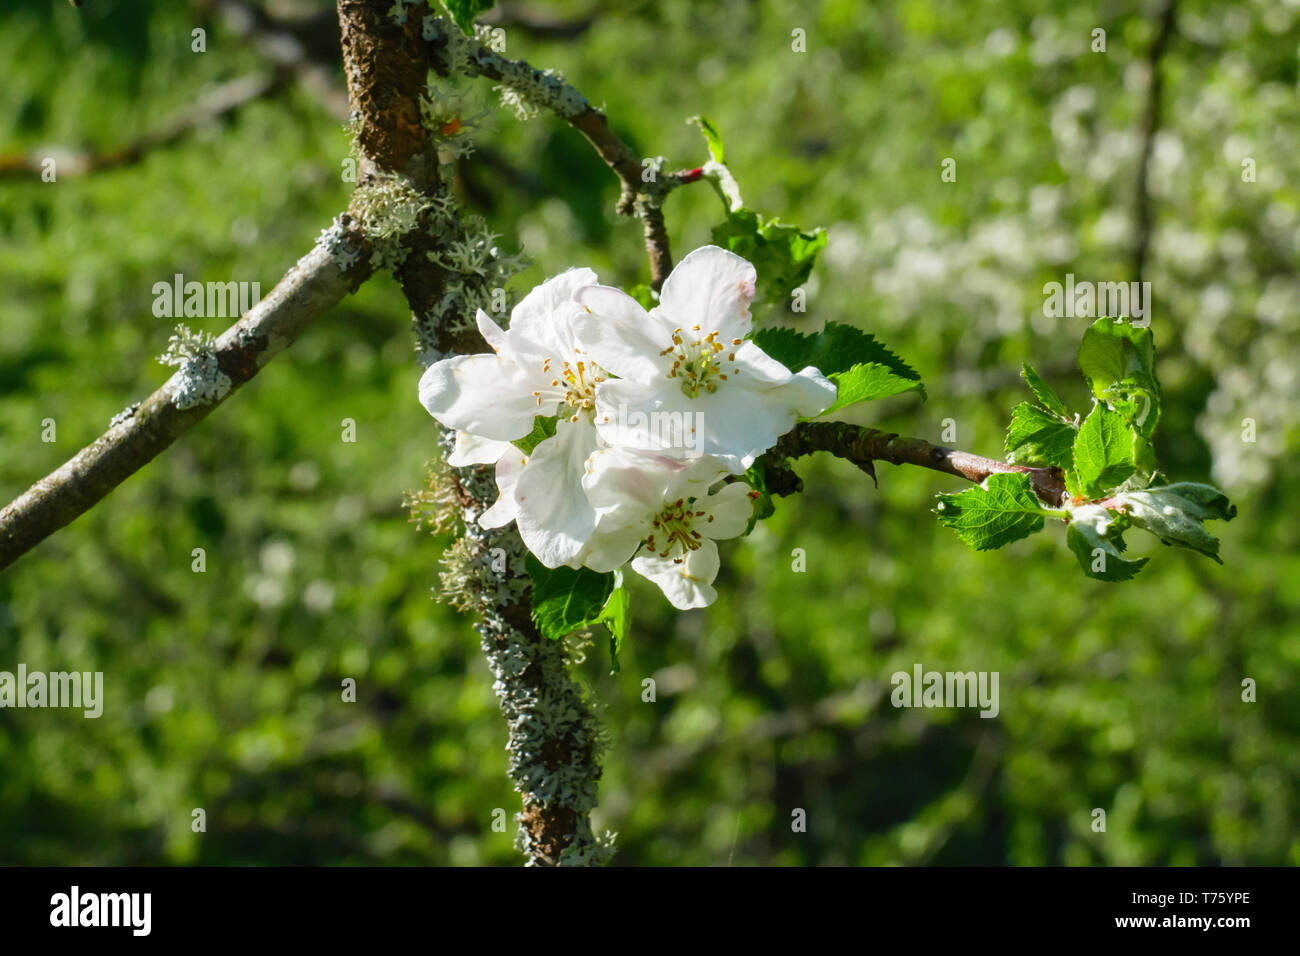 Weiße Apfel Blüte am Baum, mit unscharfem Hintergrund Stock Photo